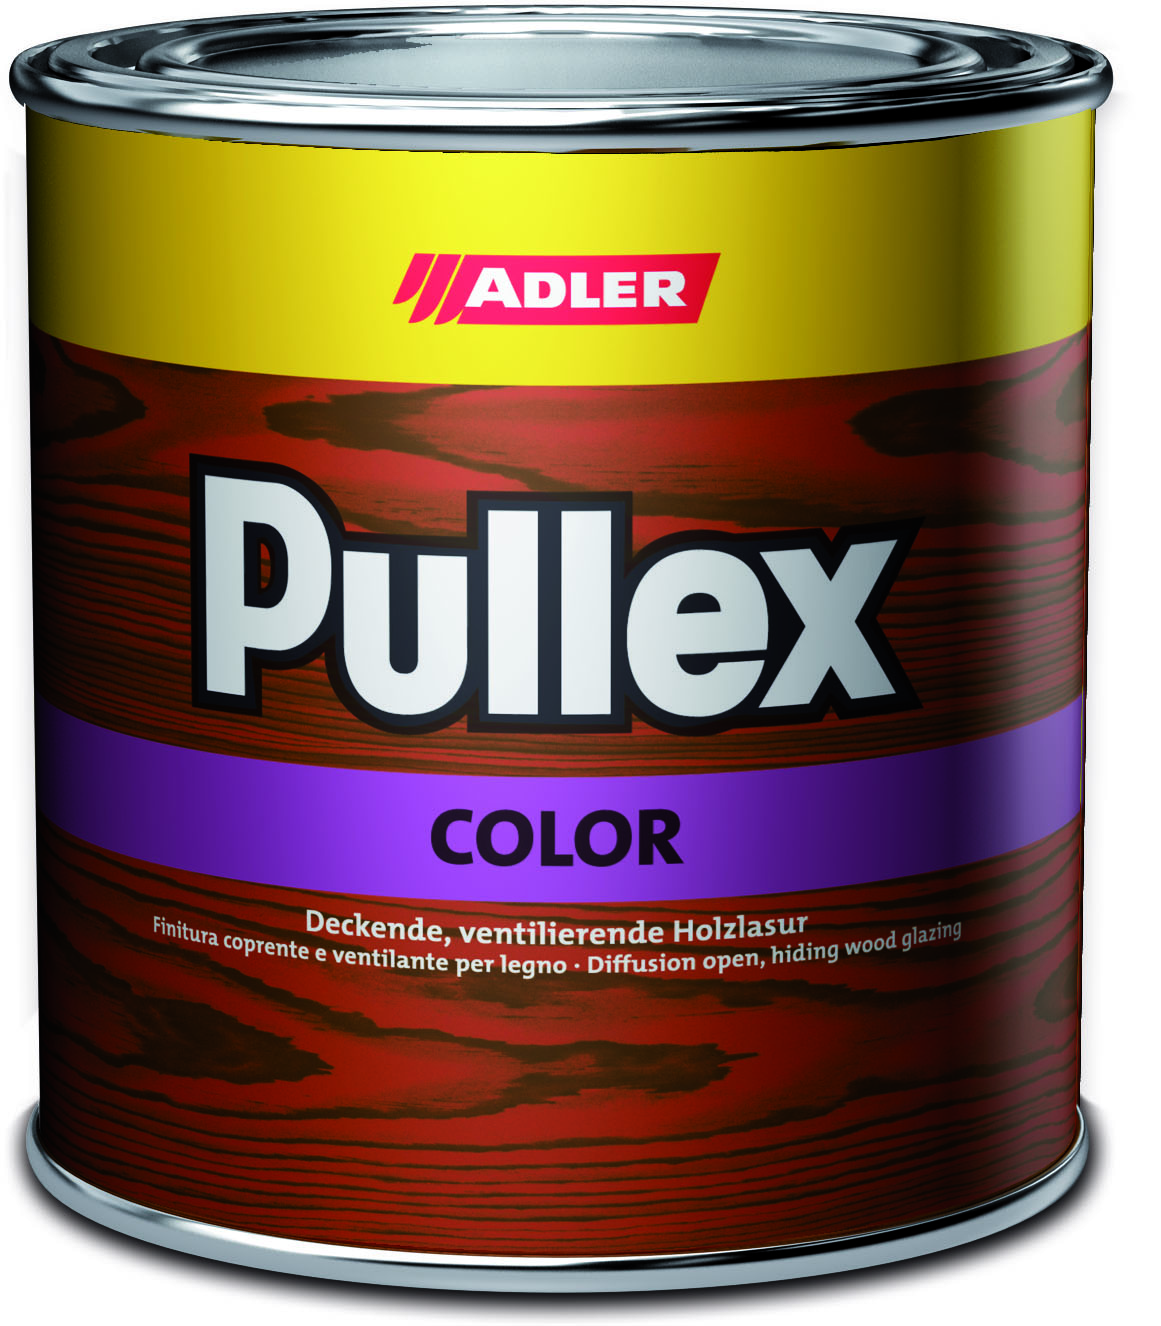 ADLER PULLEX COLOR - Ochranná farba na drevo do exteriéru 2,5 l ral 7021 - čierno sivá